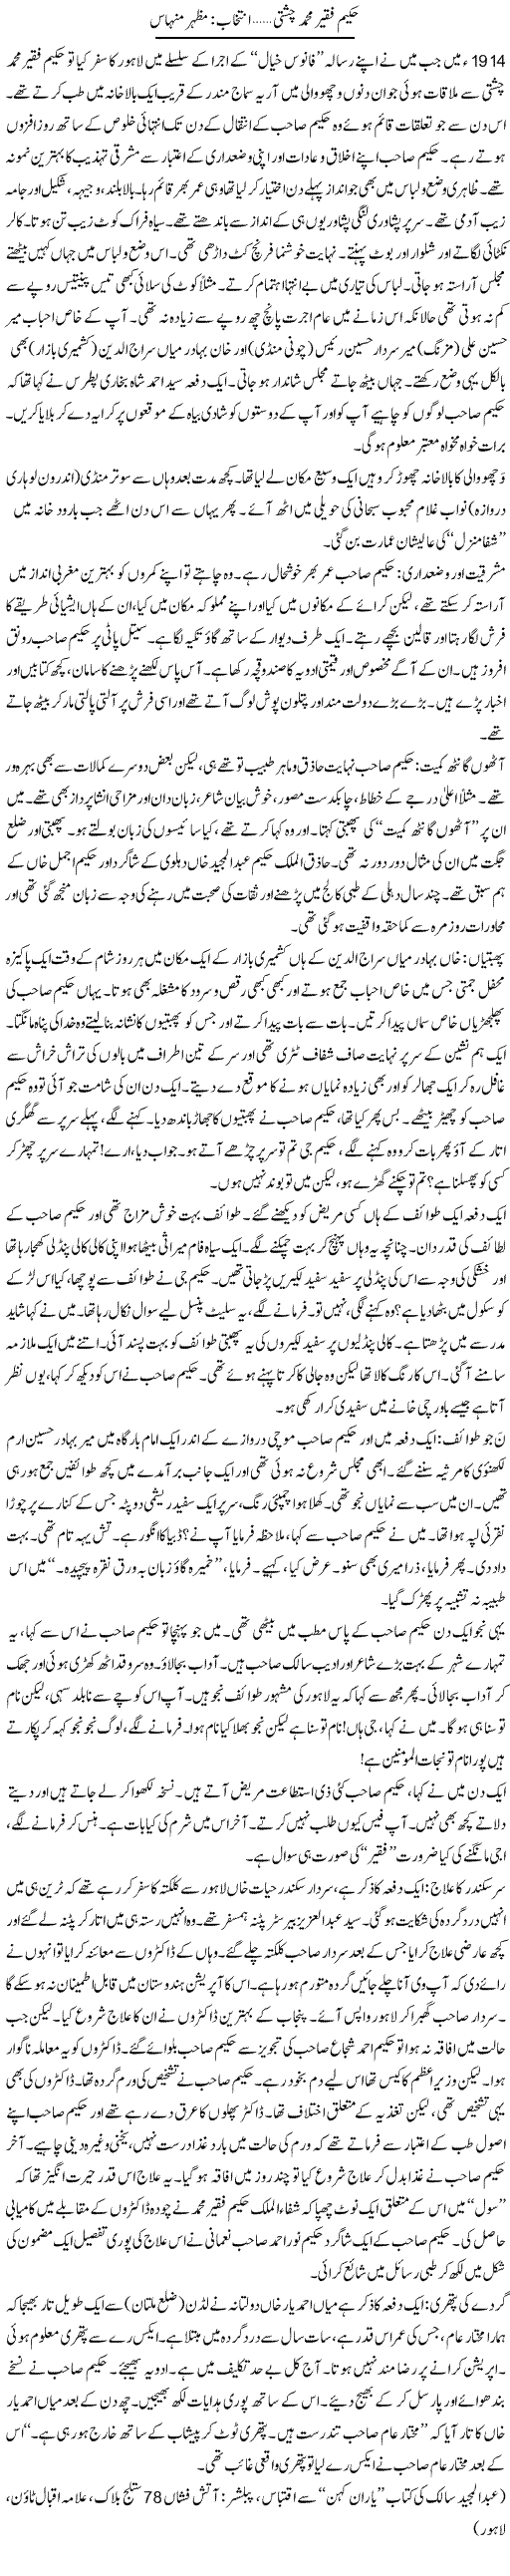 Hakim Faqir Muhammad Chishti | Mazhar Minhas | Daily Urdu Columns